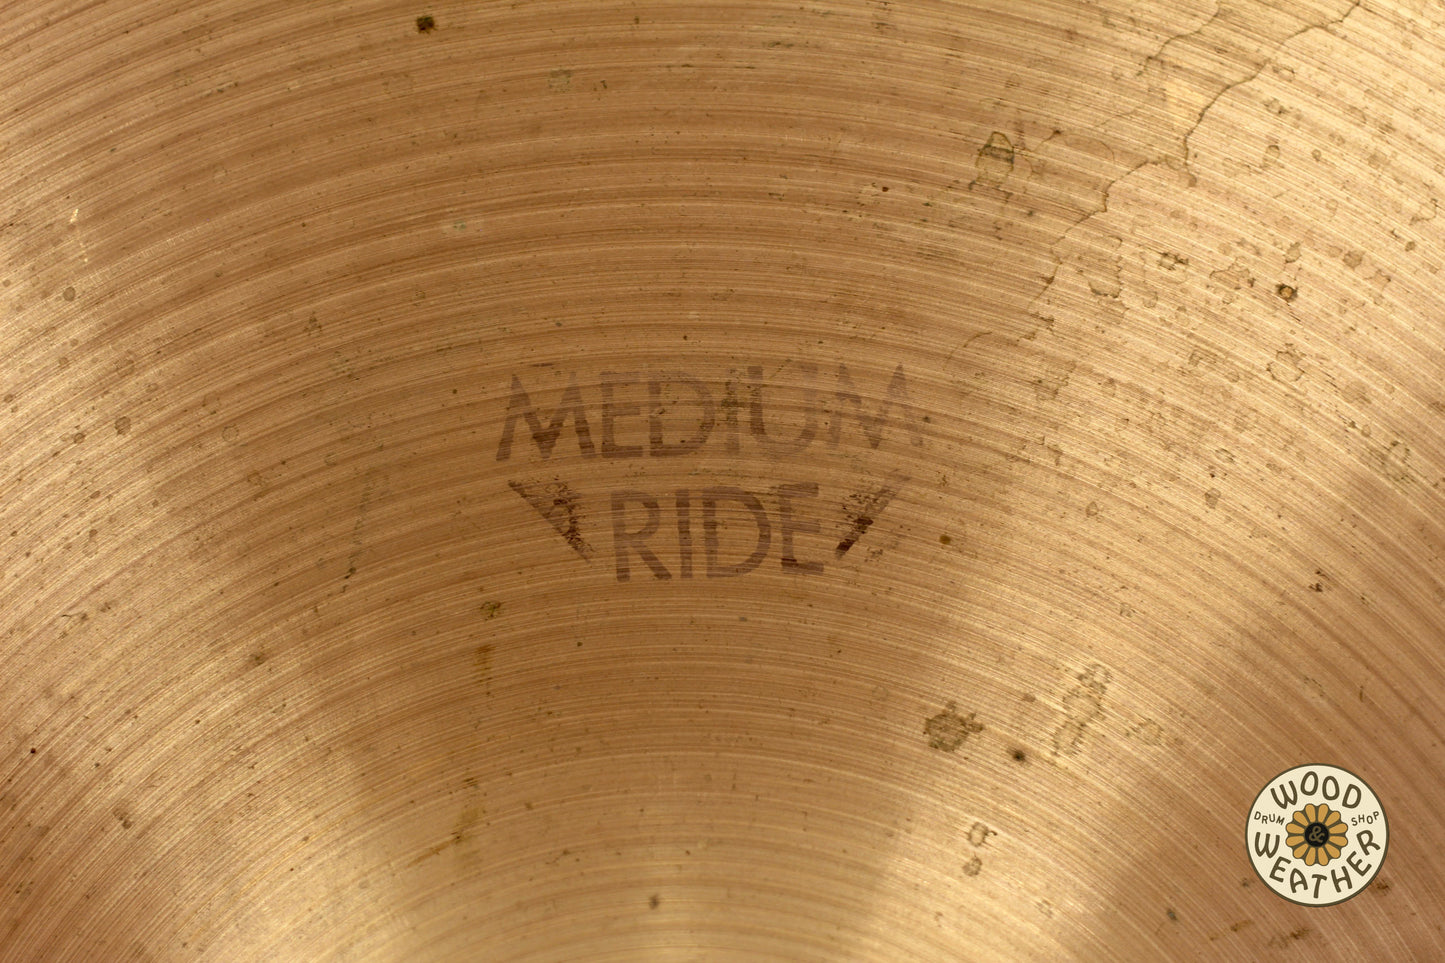 1970s A. Zildjian 20" "Hollow Stamp" Medium Ride Cymbal 2520g